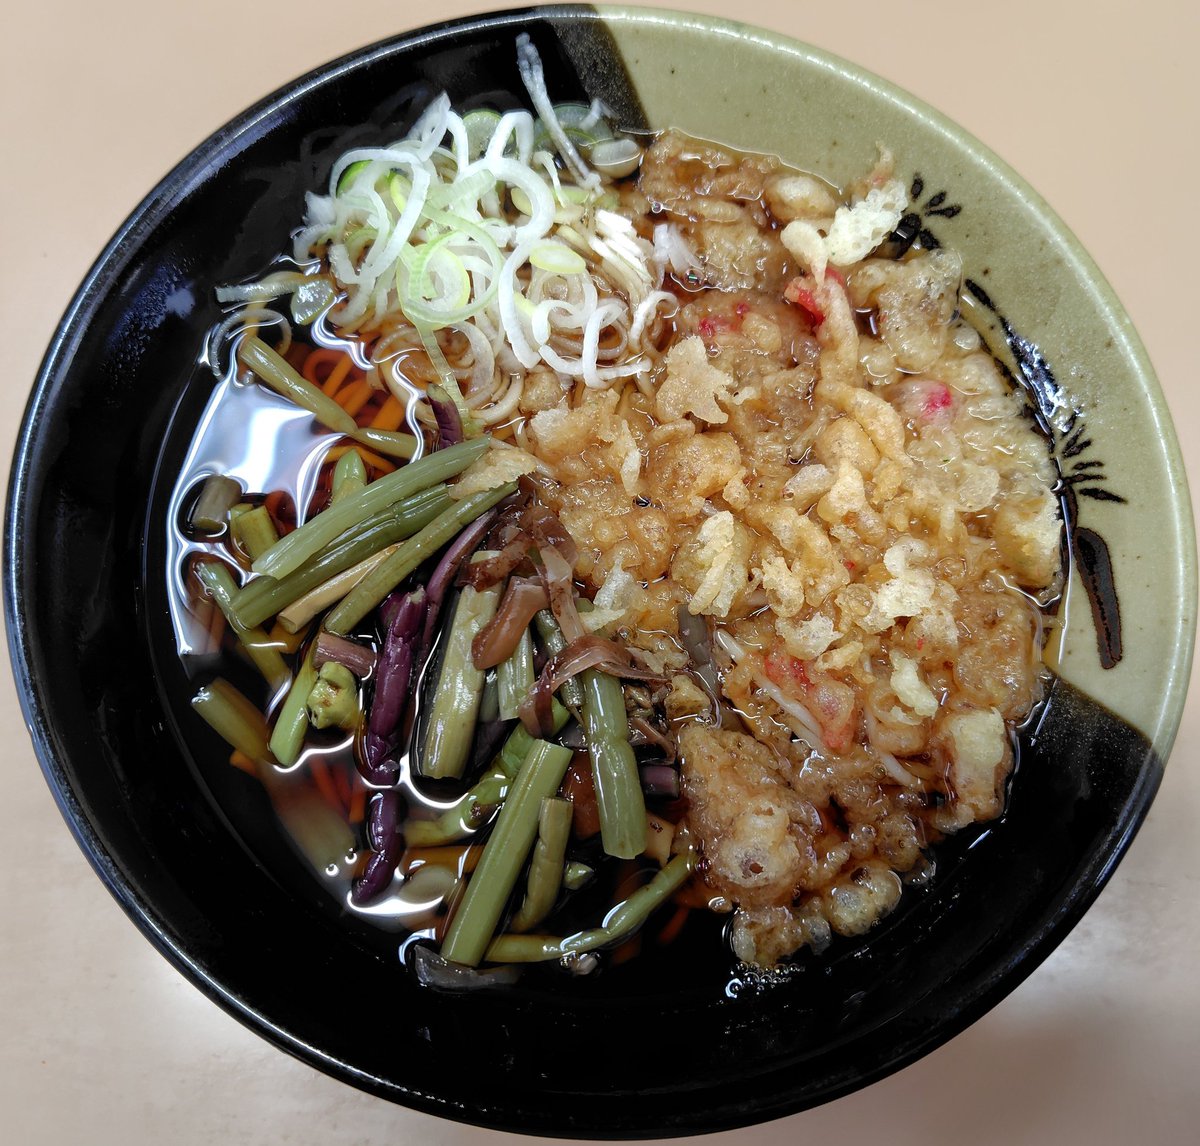 かしやま 田端
山菜たぬきそば

美味しかったです
ごちそうさまでした🙏
#路麺